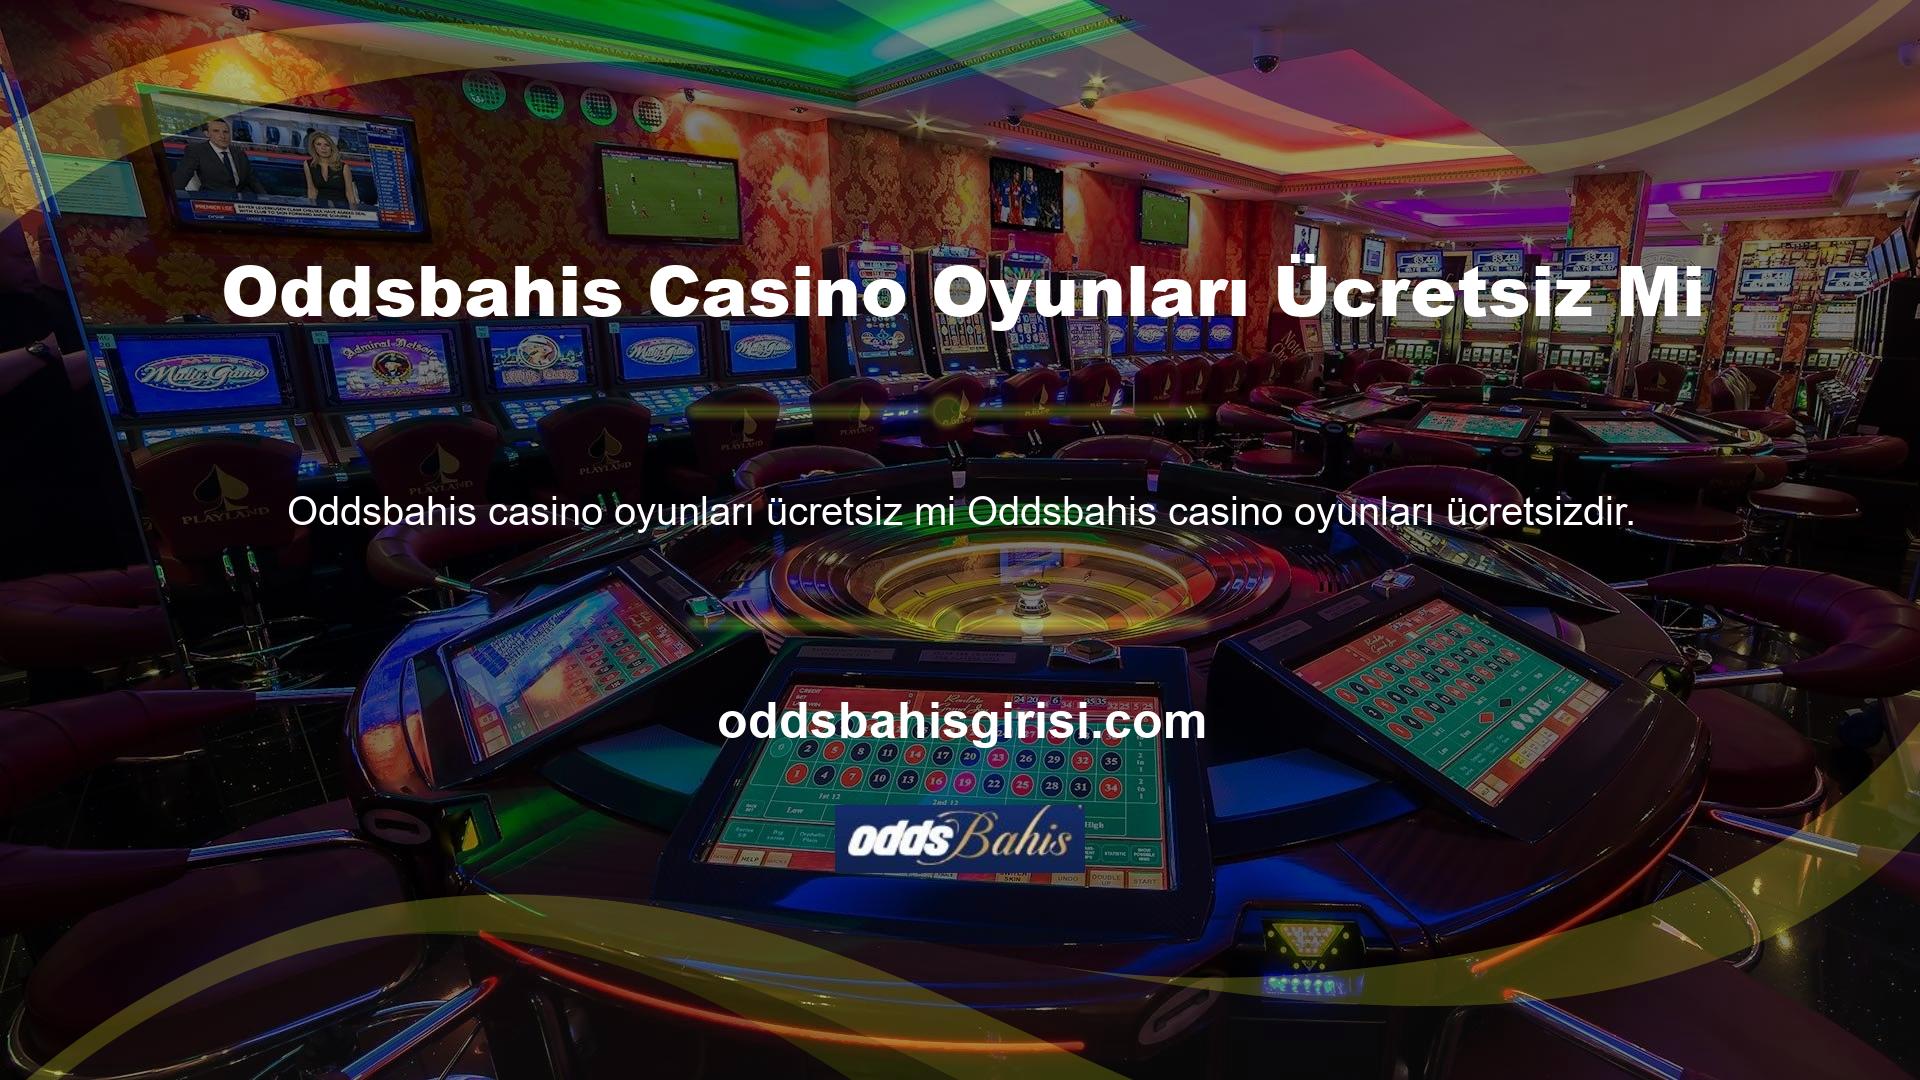 Canlı Bahis Casino hizmetine abone olmak, slotlar ve jackpotlar da dahil olmak üzere çeşitli oyun seçeneklerine erişmenizi sağlar